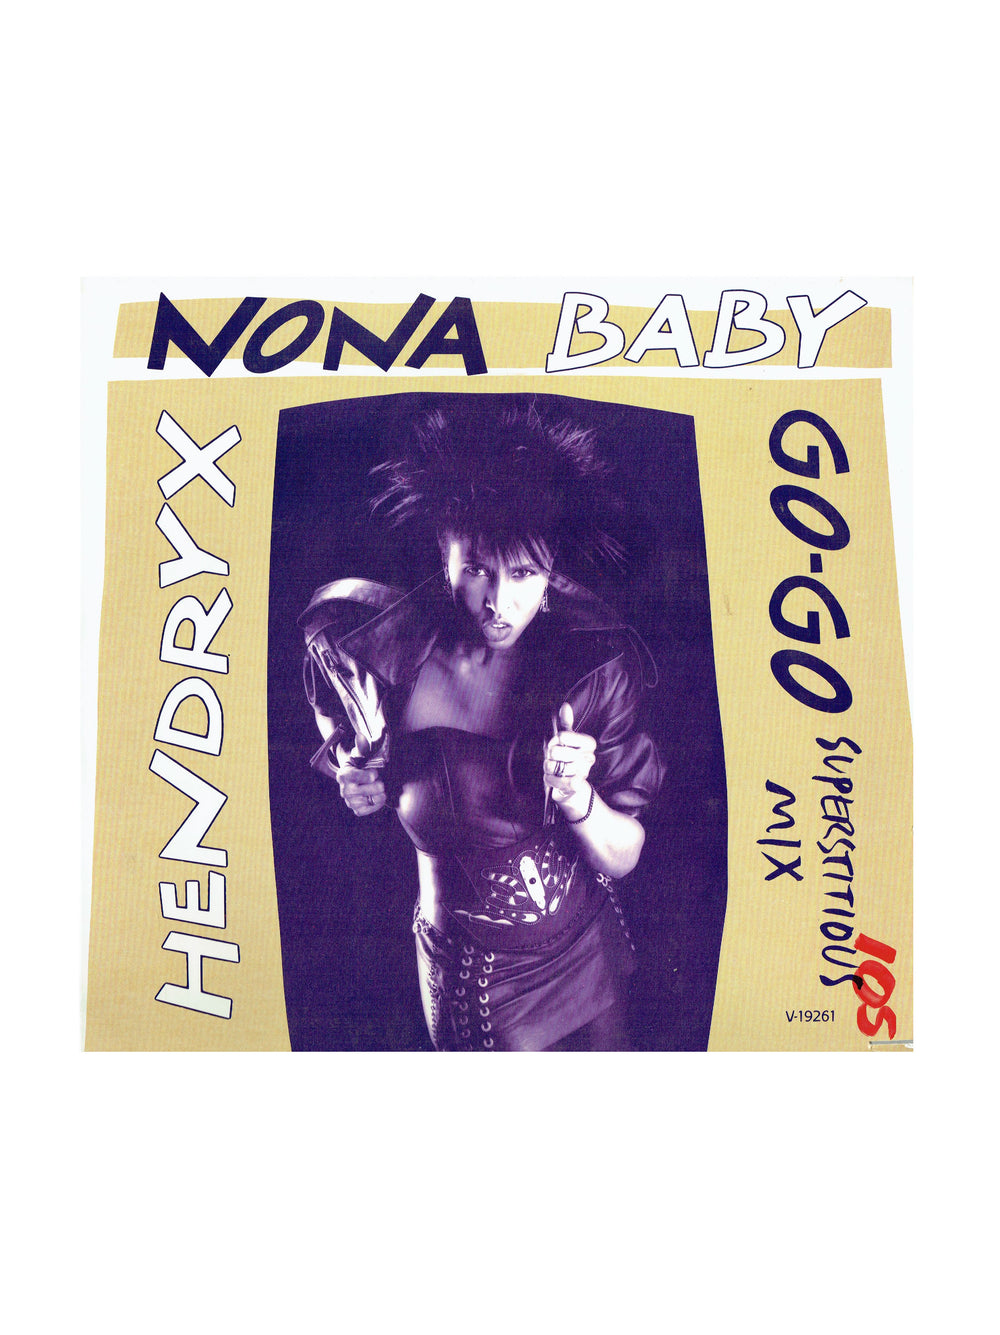 Nona Hendryx Baby Go-Go USA 12 Inch Vinyl Written By Prince